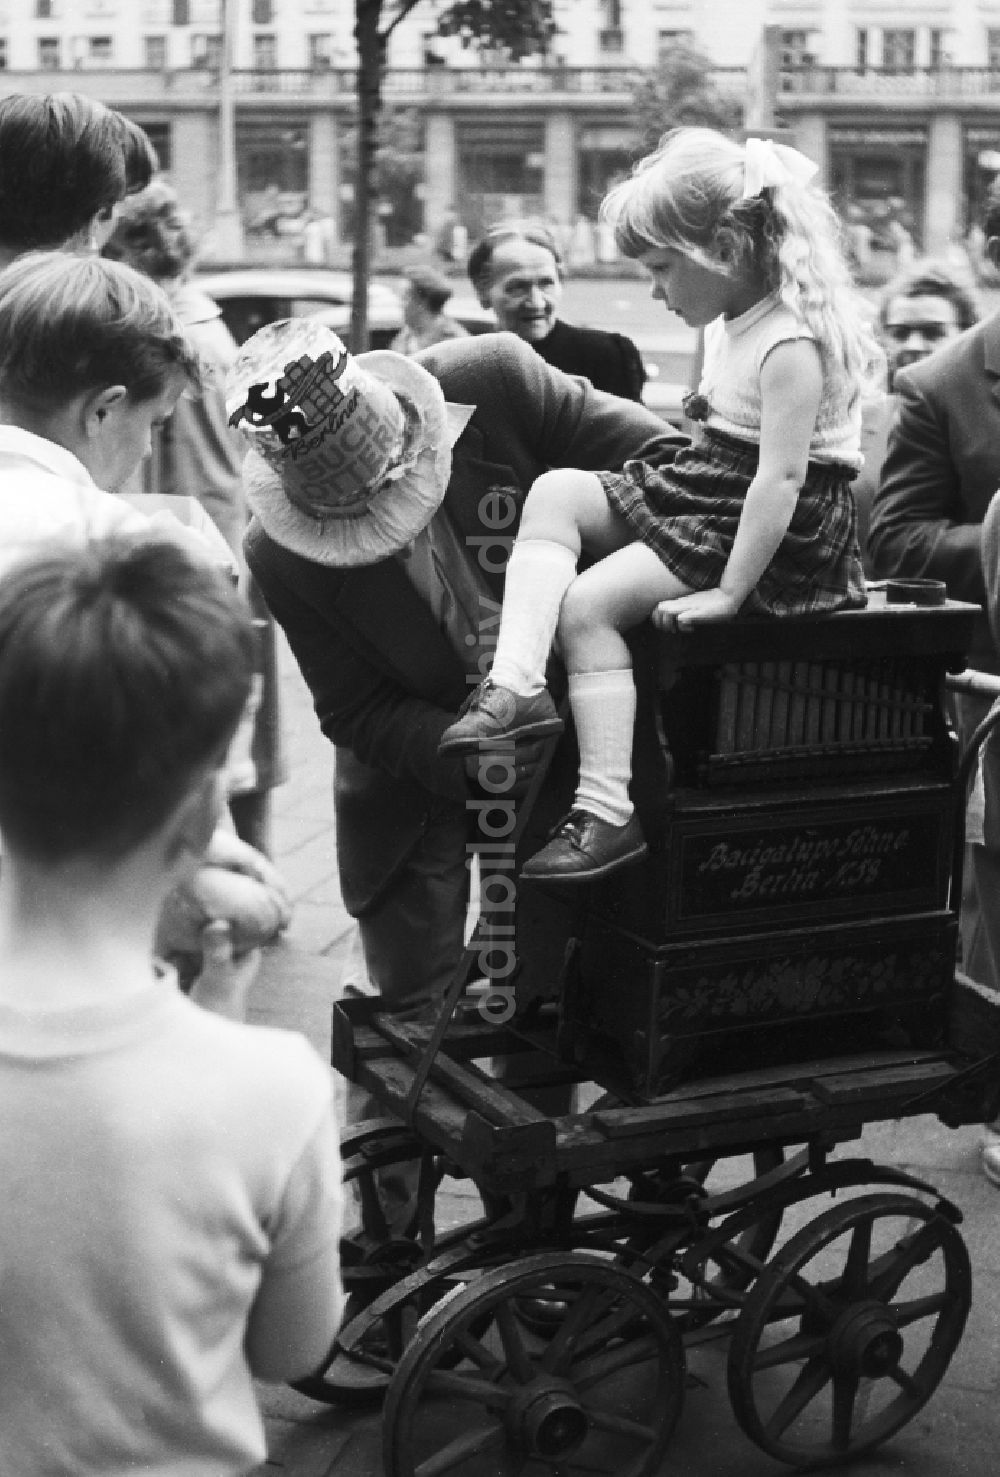 DDR-Fotoarchiv: Berlin - Ein kleines Mädchen mit Zopf sitz auf einer Drehorgel in Berlin, der ehemaligen Hauptstadt der DDR, Deutsche Demokratische Republik